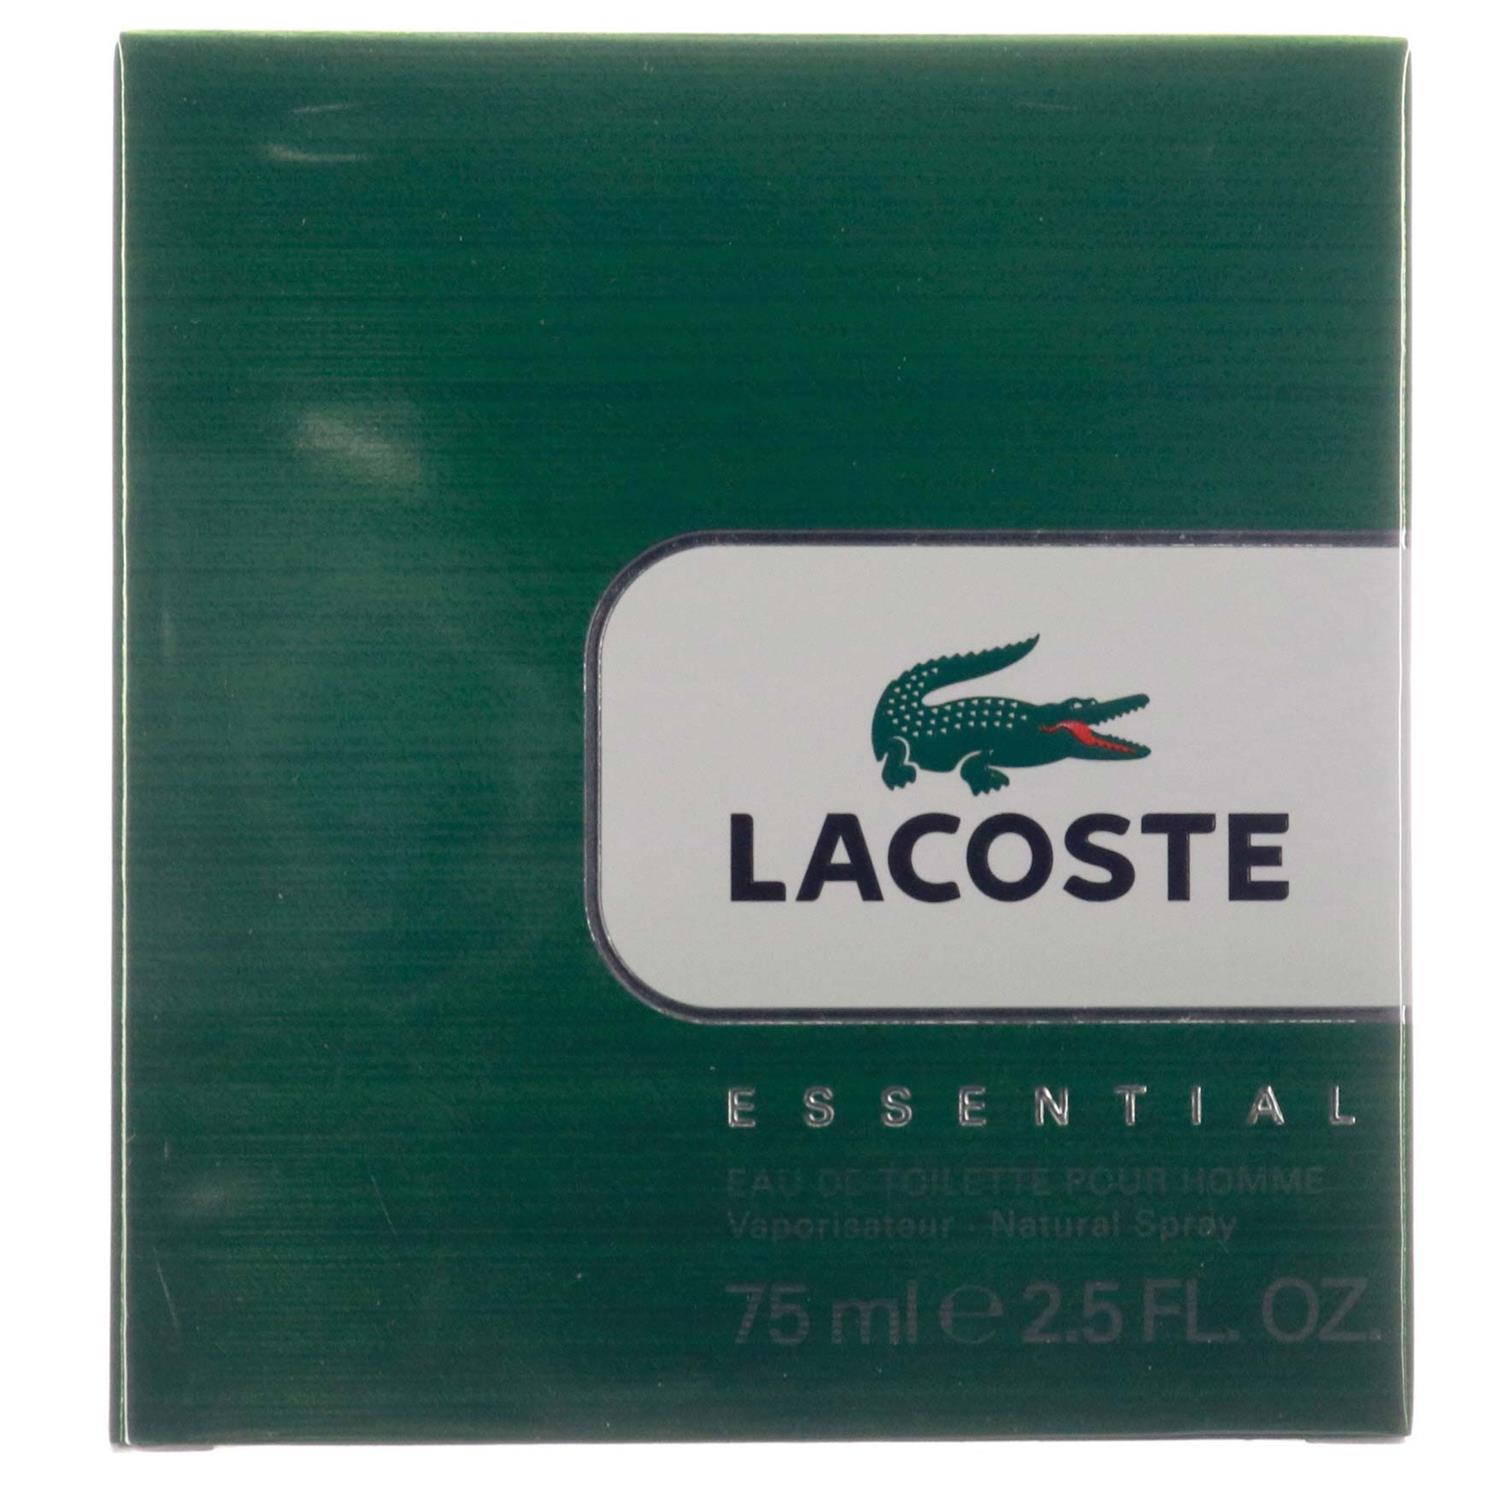 Lacoste Essential Edt 75 ml til billige